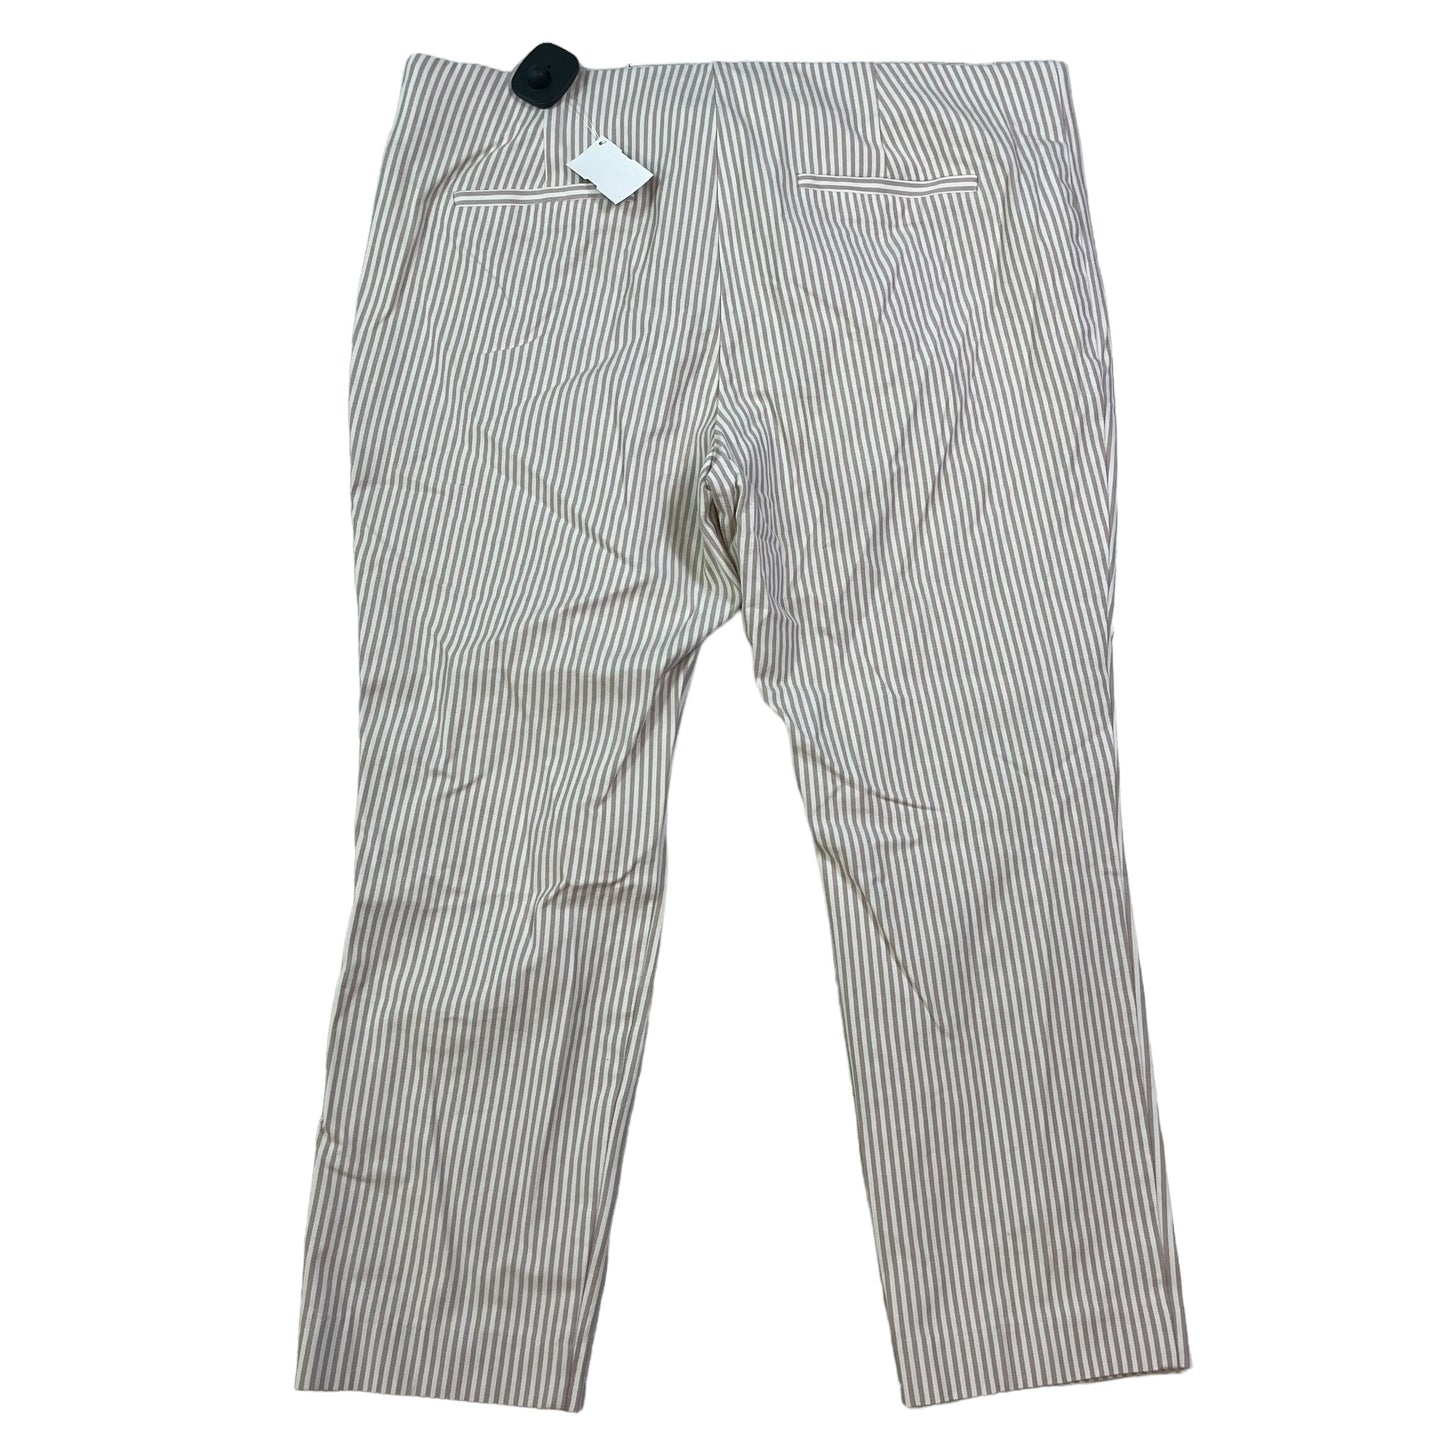 Tan & White Pants Cropped A New Day, Size 1x